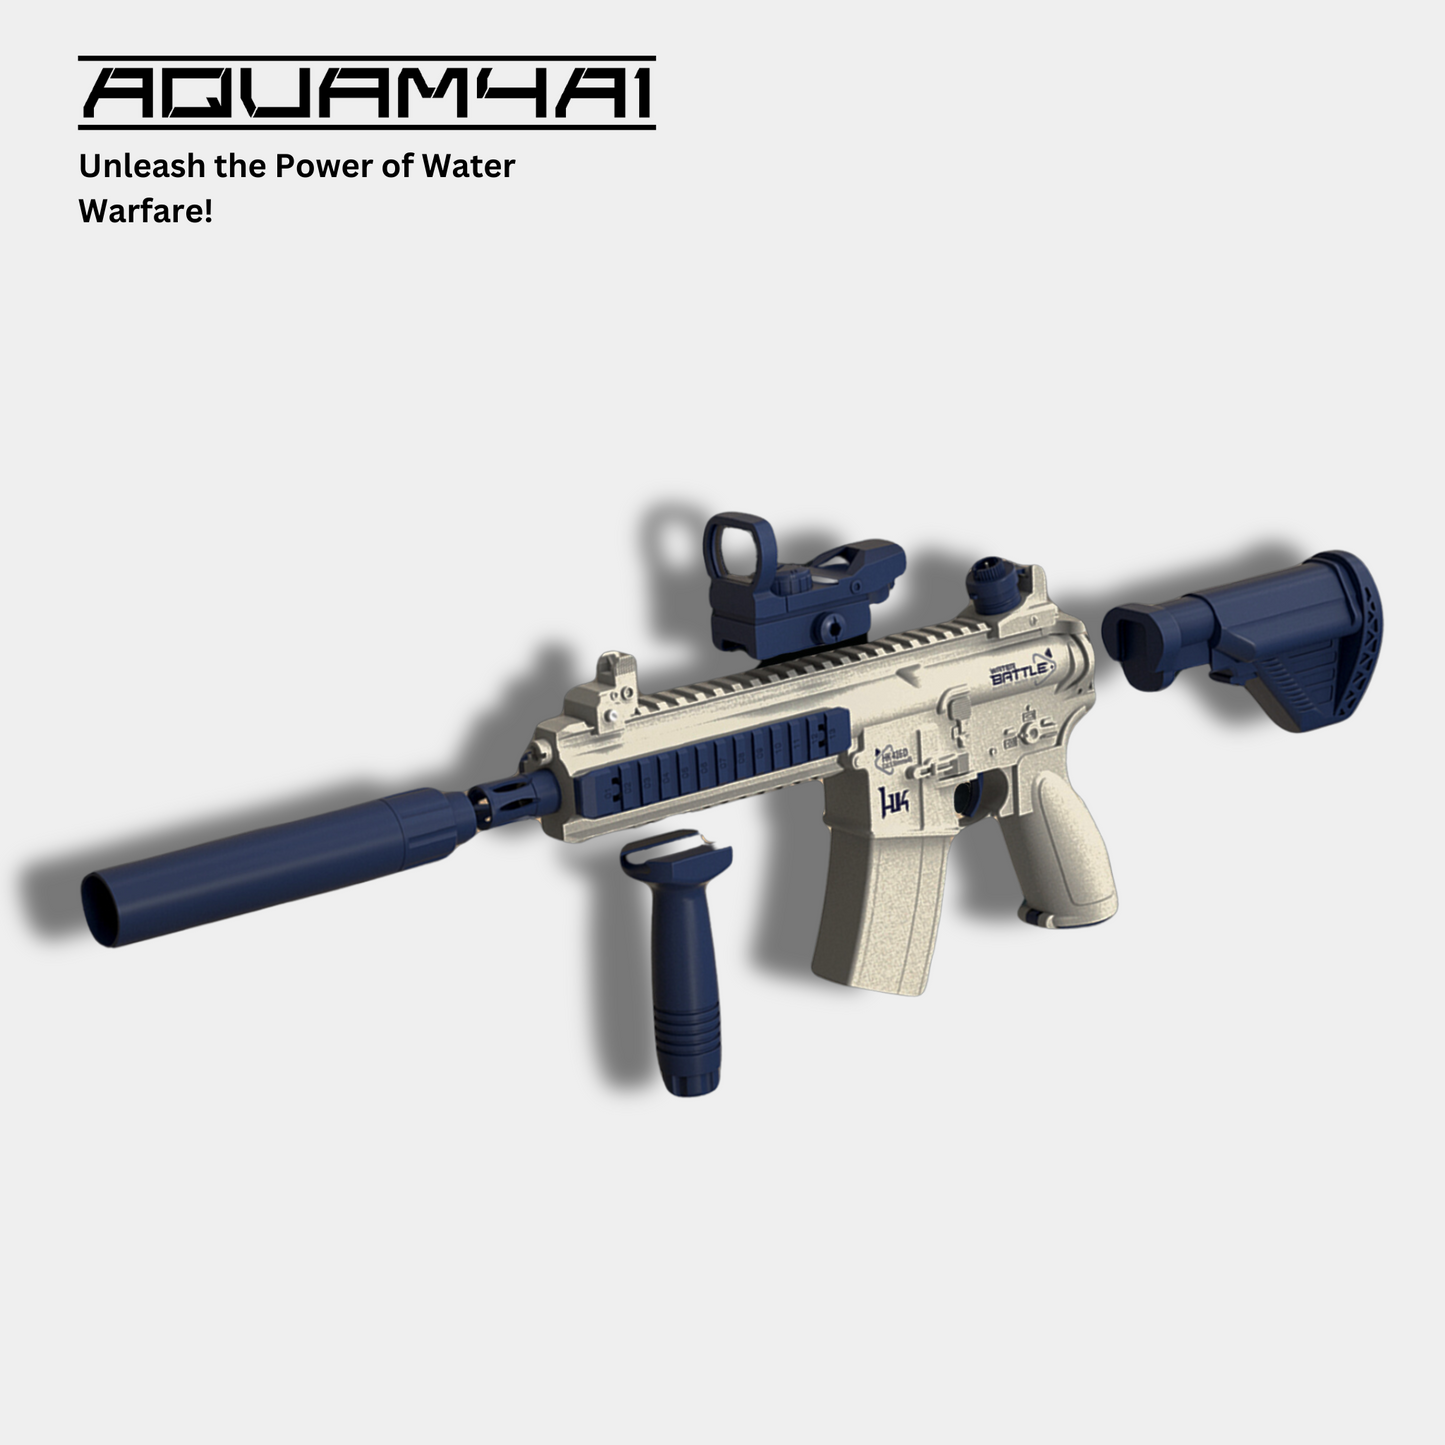 AquaM4A1 Electric Water Gun